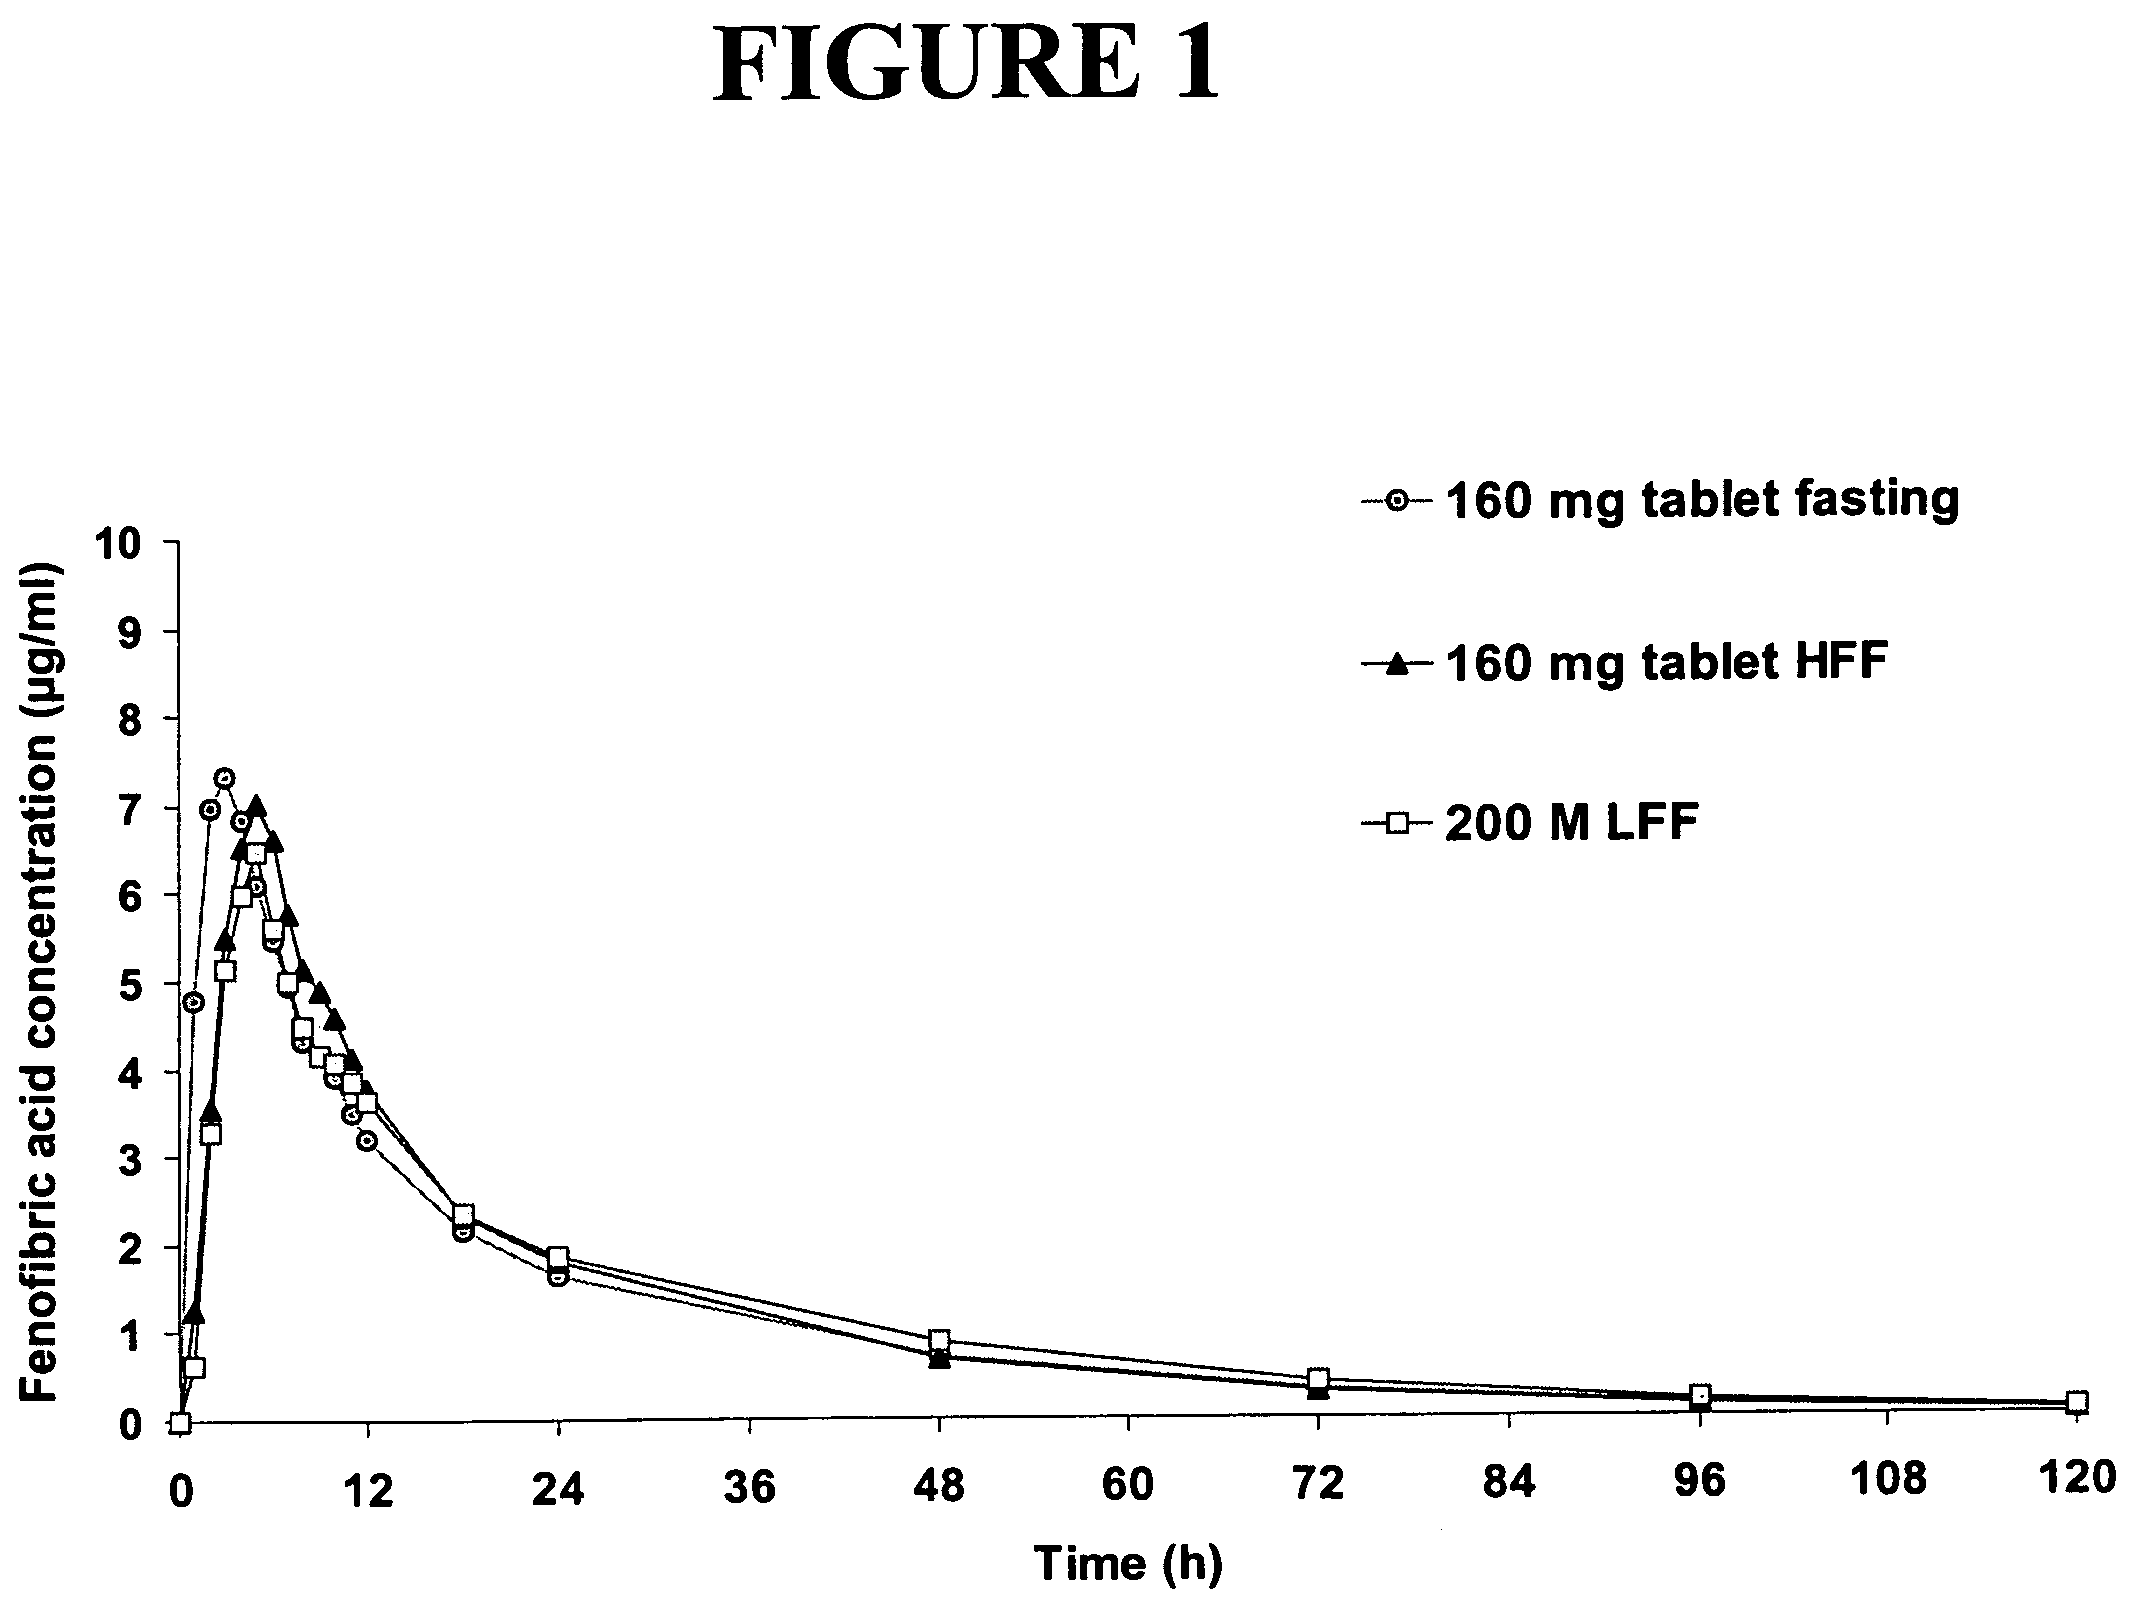 Nanoparticulate fibrate formulations